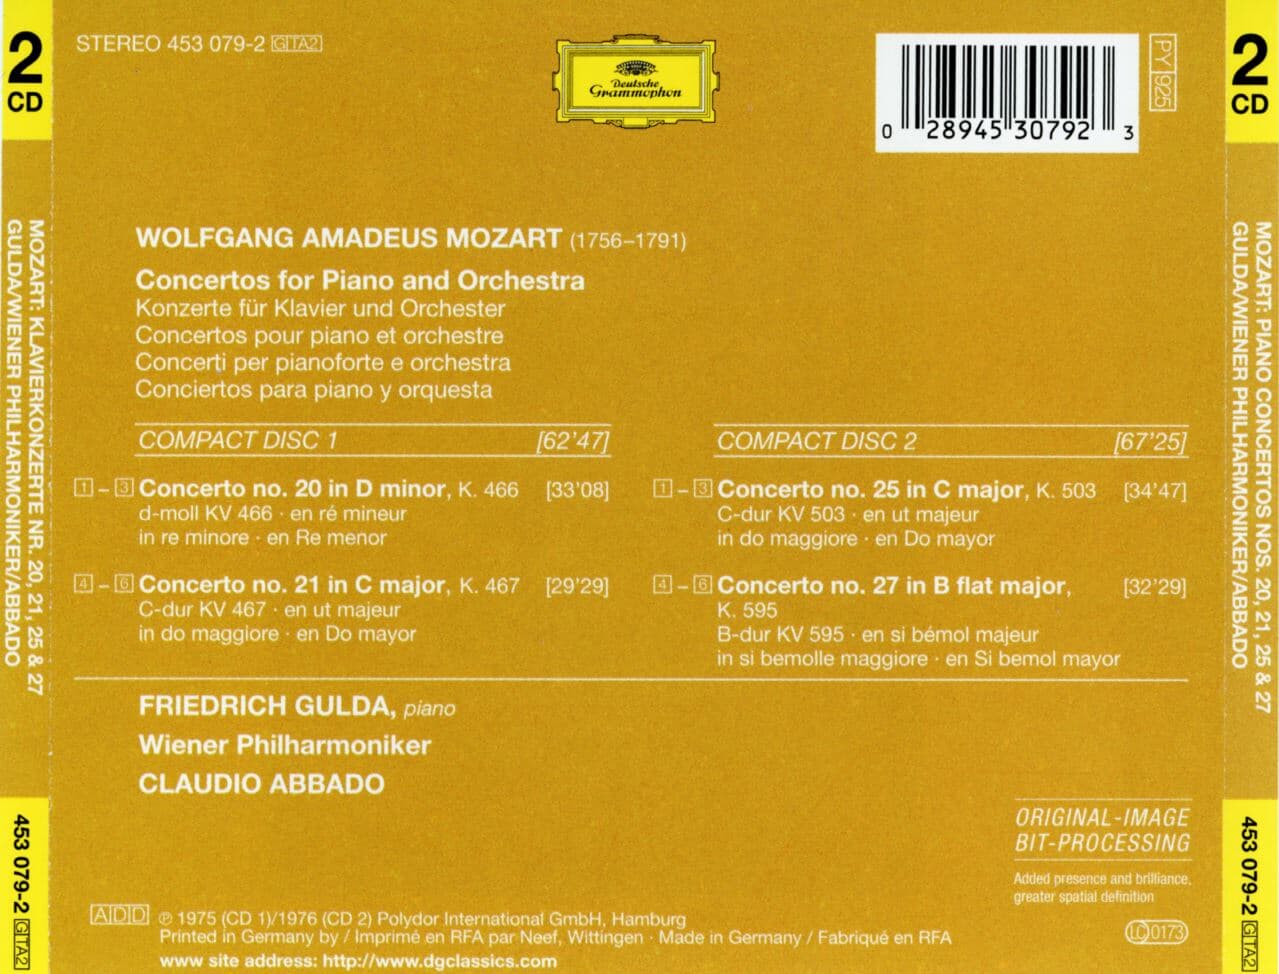 프리드리히 굴다 - Friedrich Gulda - Mozart Great Piano Concertos Nos.20,21,25,27 2Cds [독일발매]